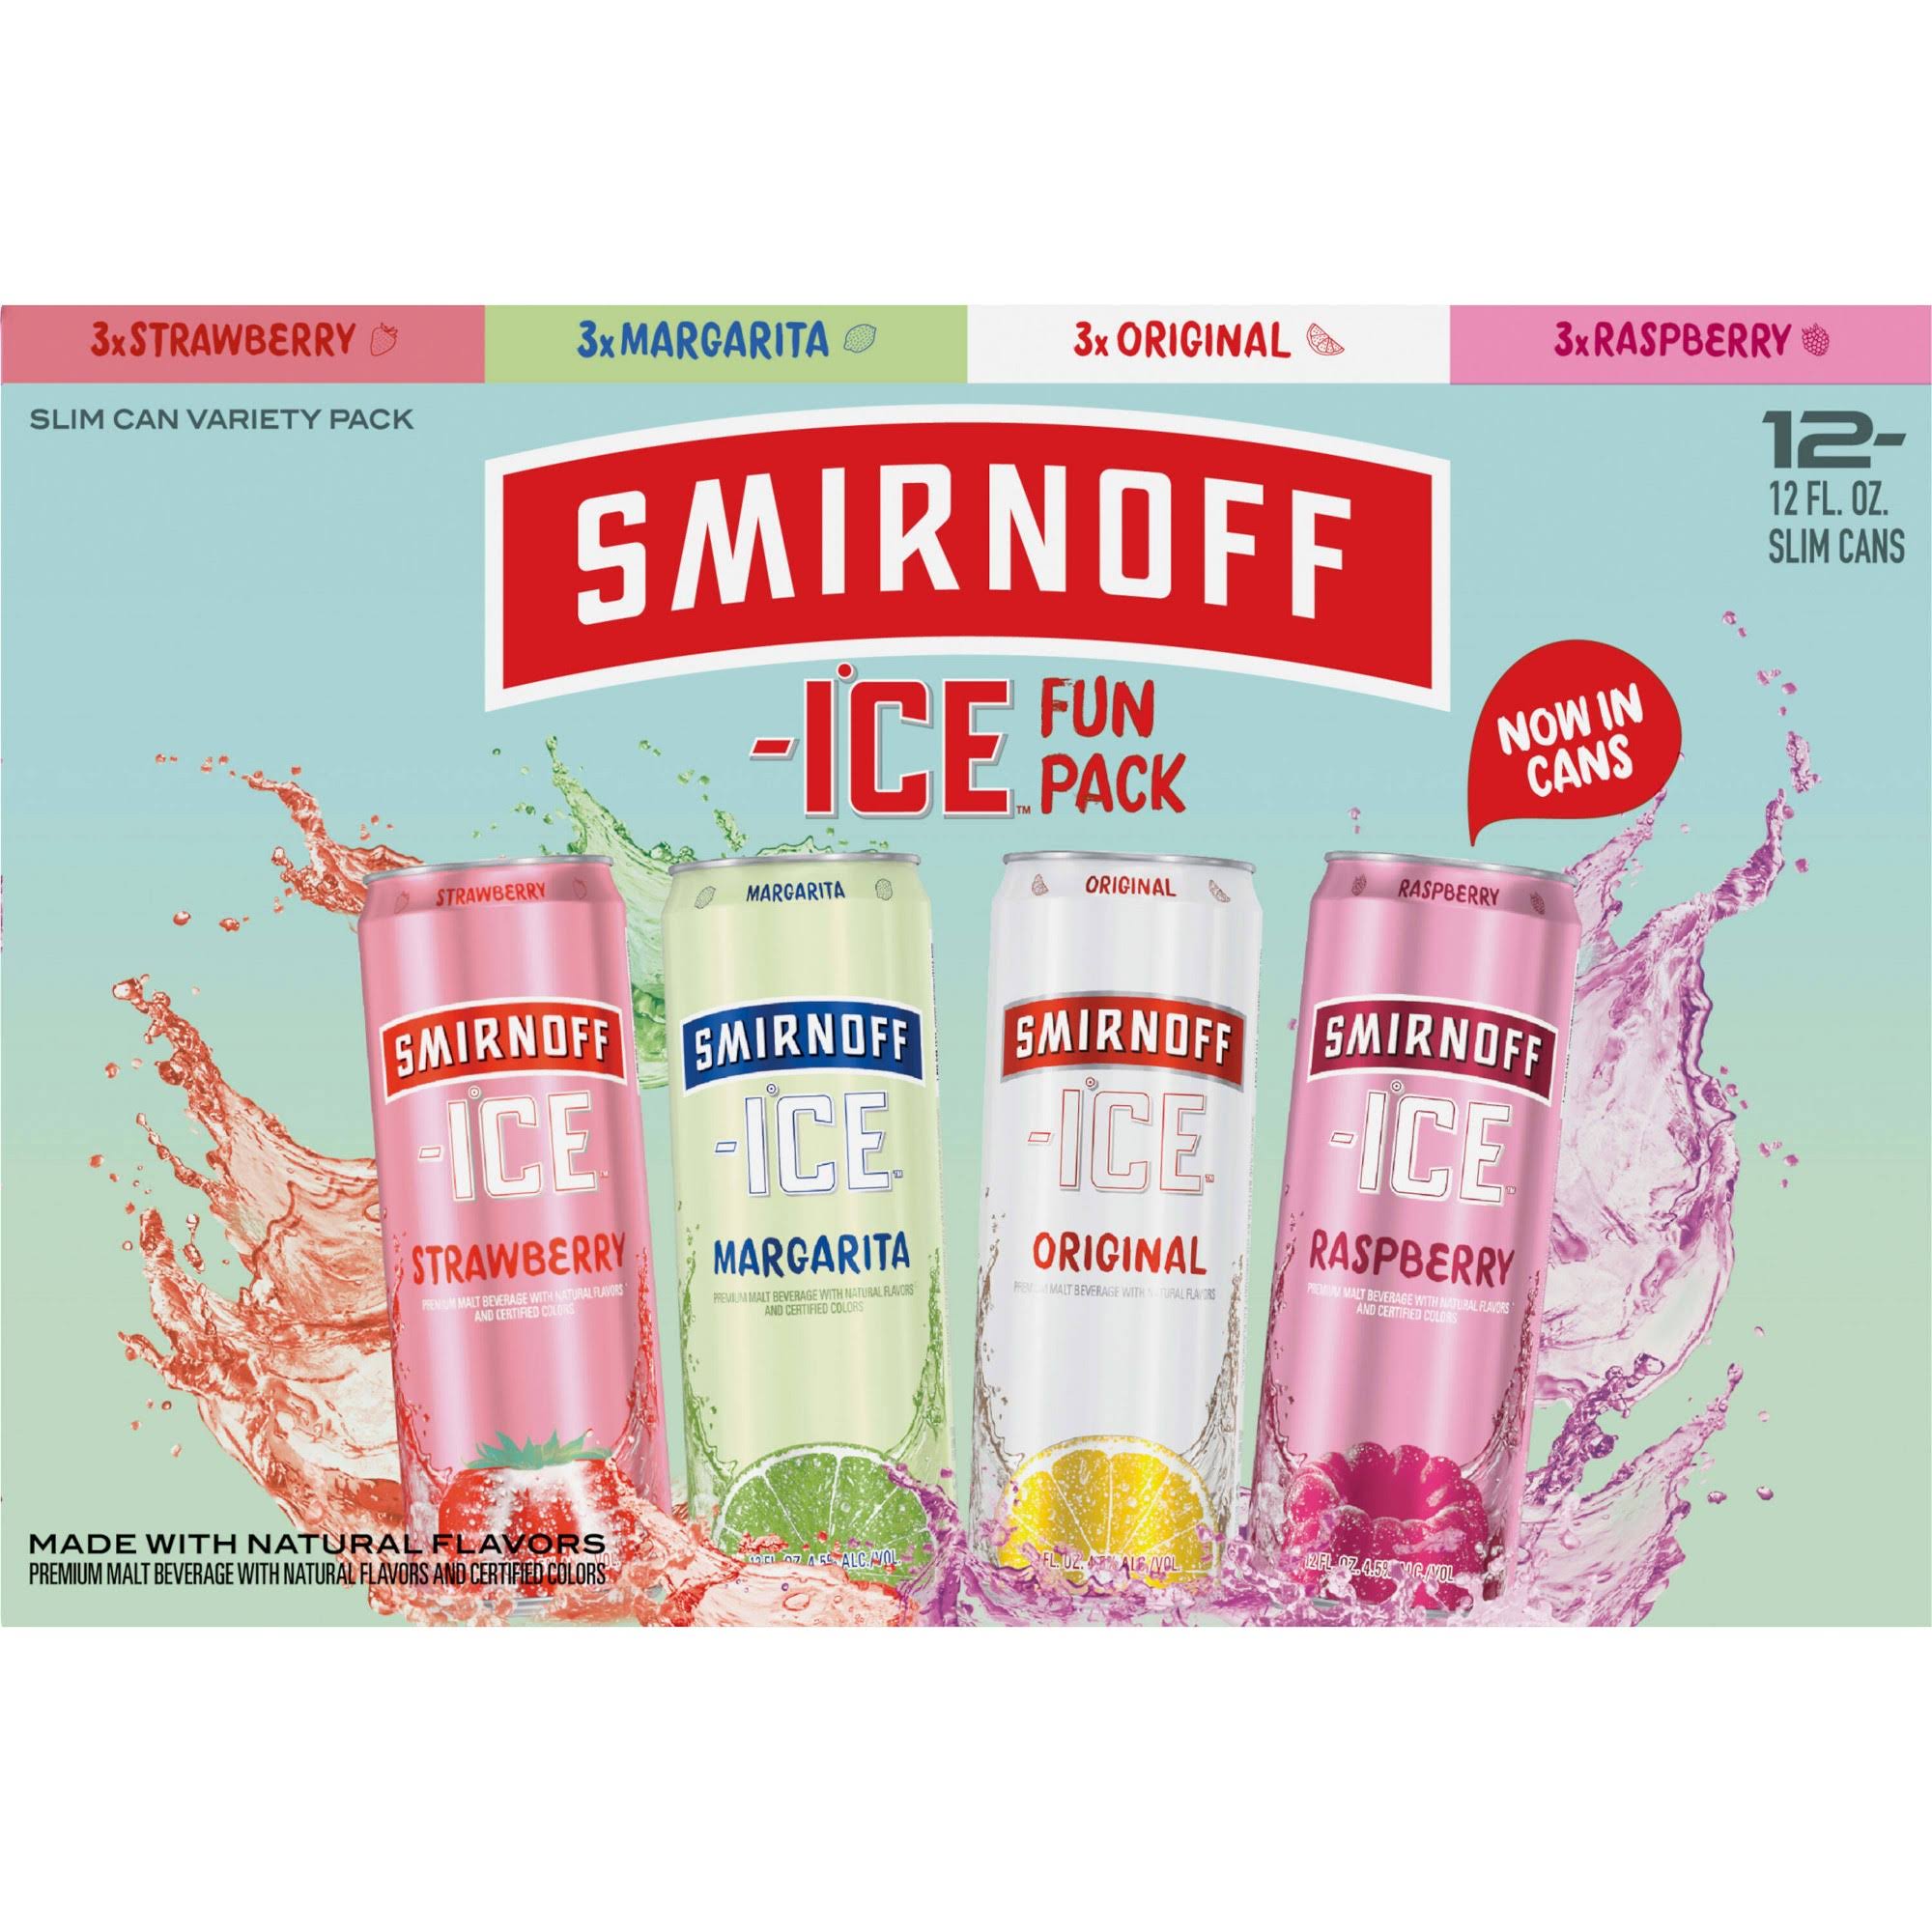 Smirnoff Ice Beer, Variety, Fun Pack - 12 pack, 12 fl oz slim cans